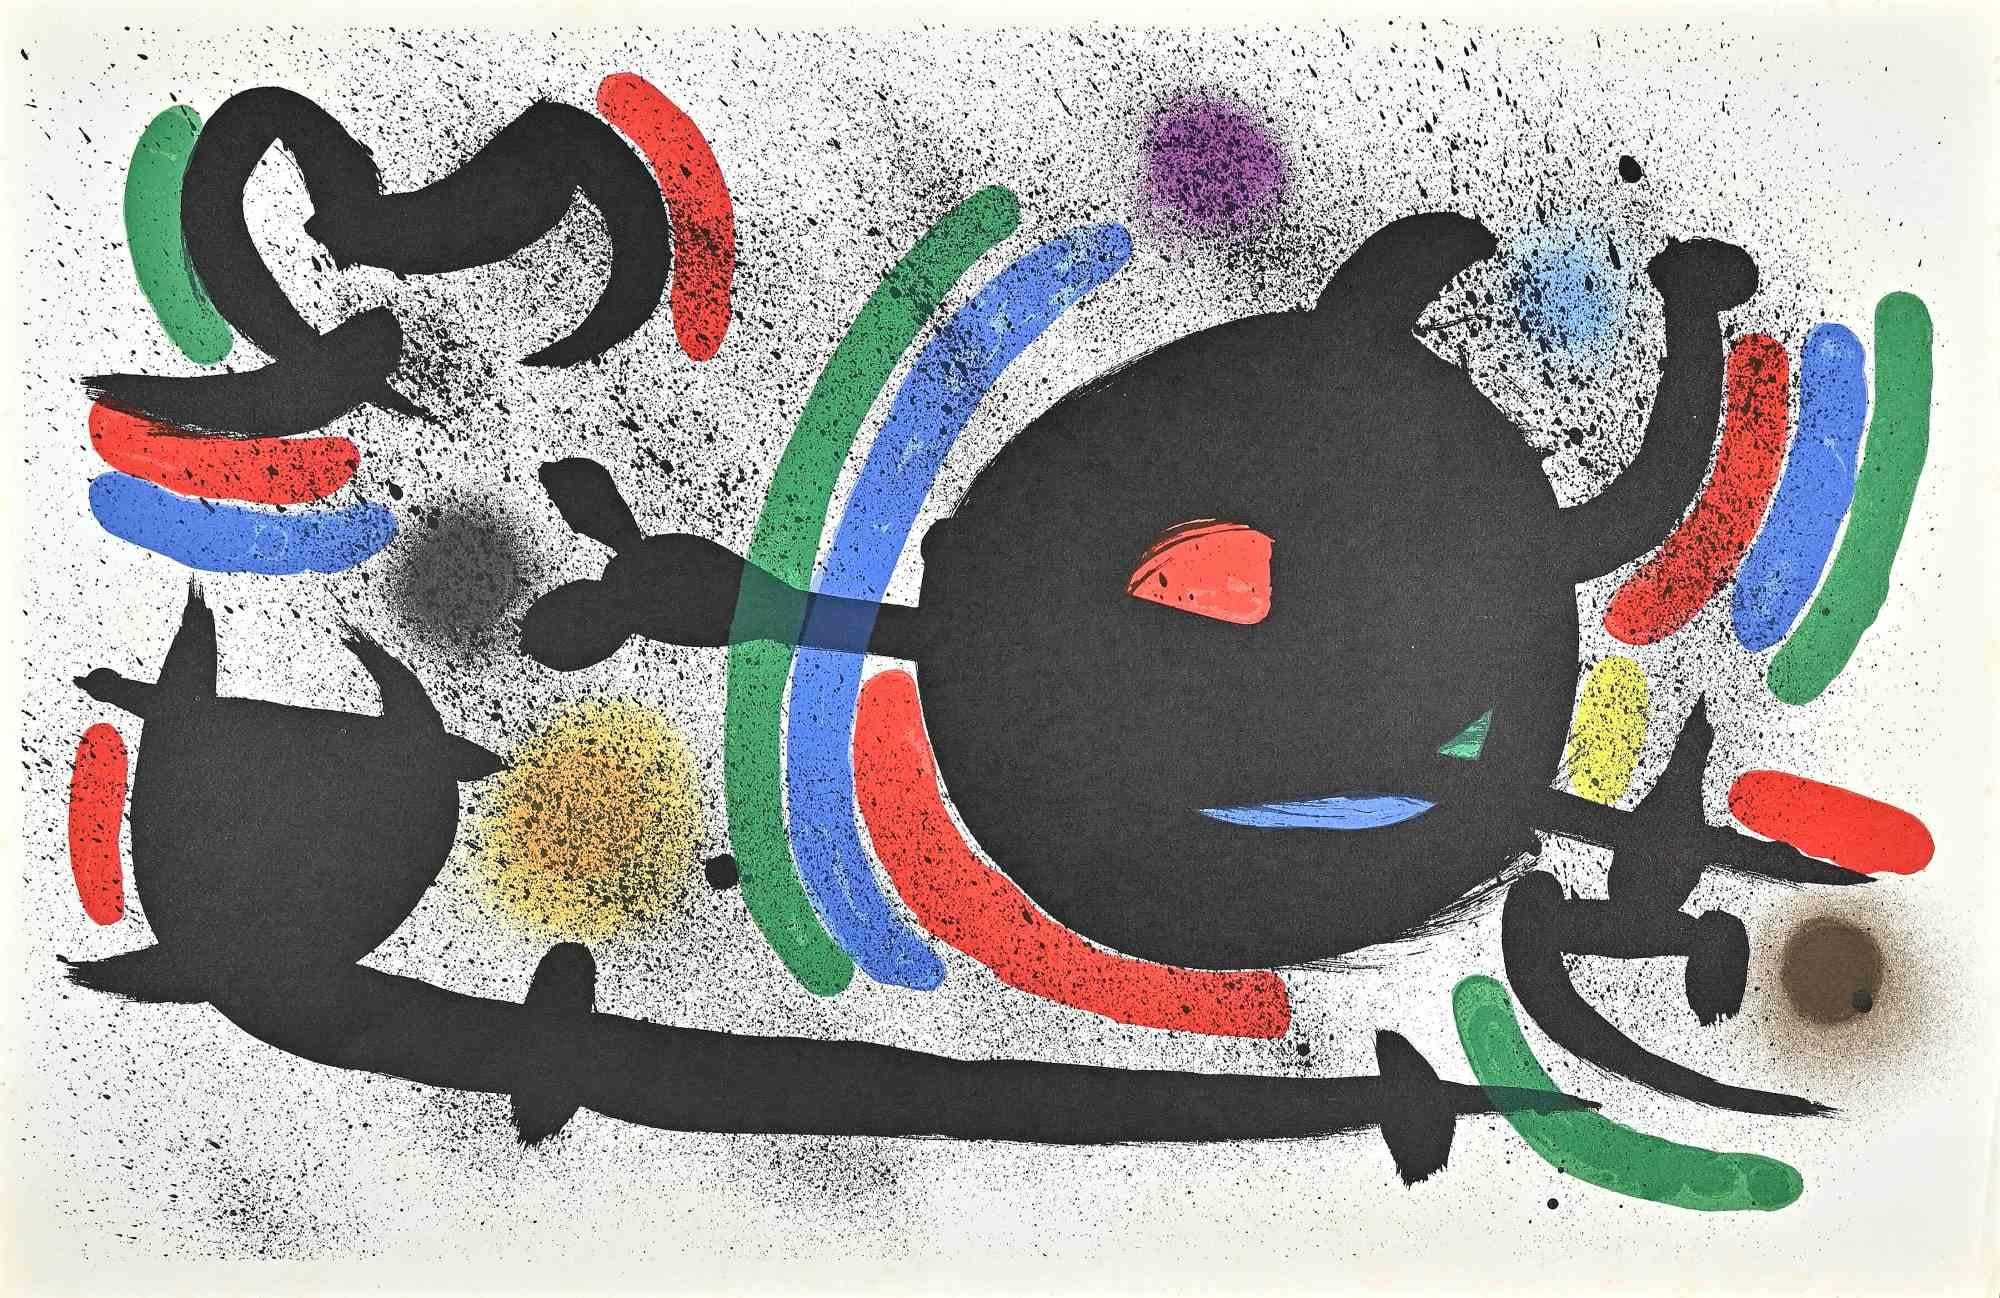 Joan Miró Abstract Print - Miró Lithographe I - Plate X -  Lithograph by J. Mirò - 1972